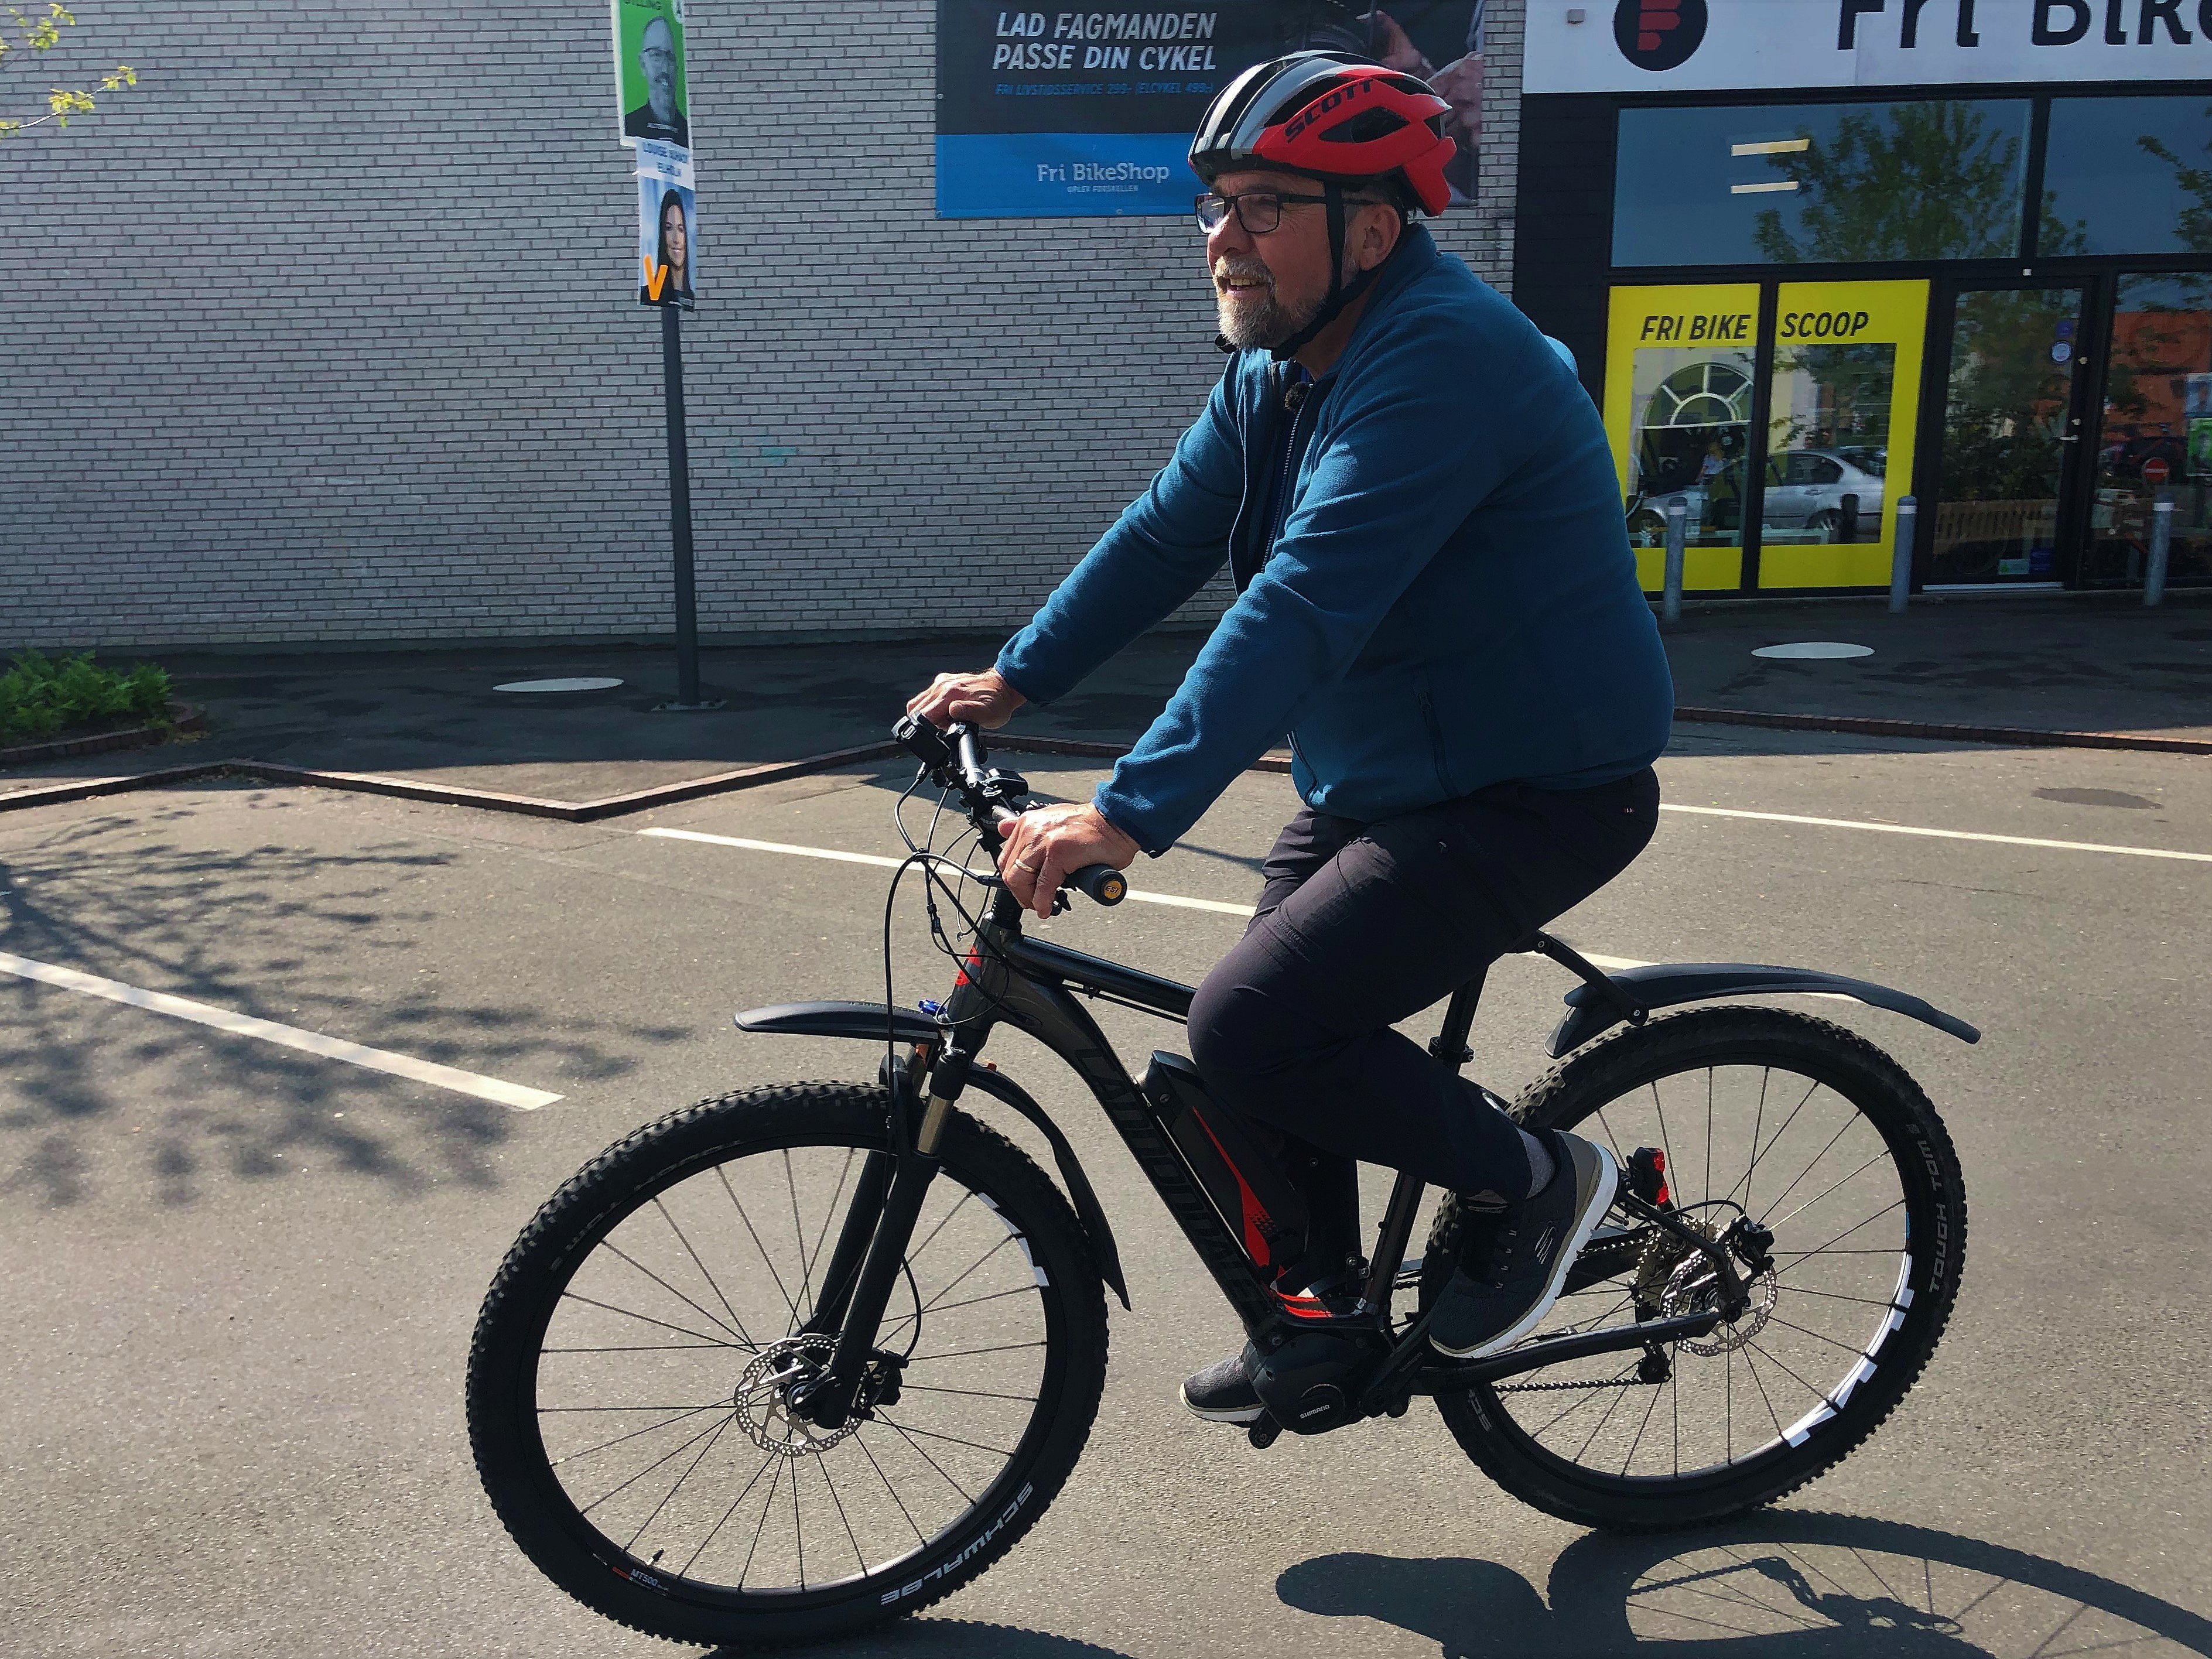 Regnskab tank ufravigelige Elcykler populære som aldrig før - Jes lader bilen stå og cykler 21  kilometer på job | TV2 ØST